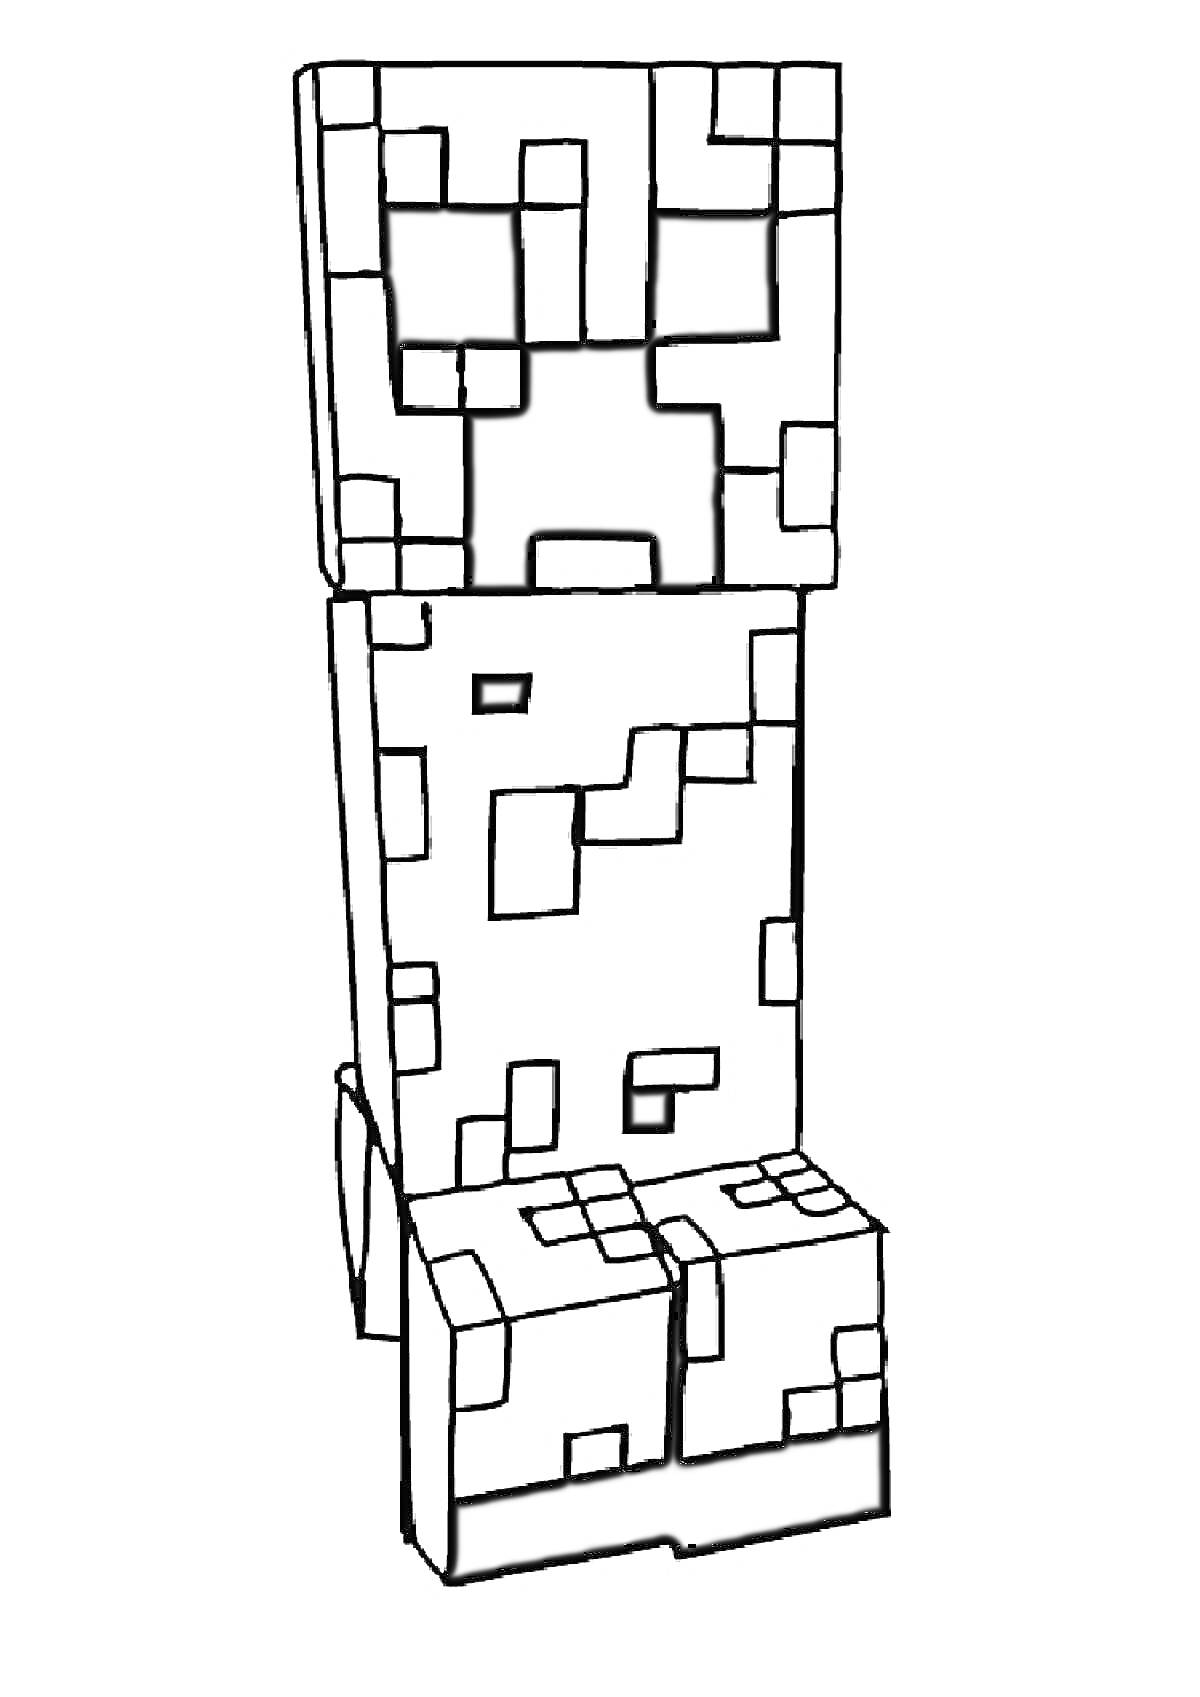 Крипер из игры Minecraft, пиксельный персонаж с квадратной головой, телом и ногами, состоящий из черно-белых блоков